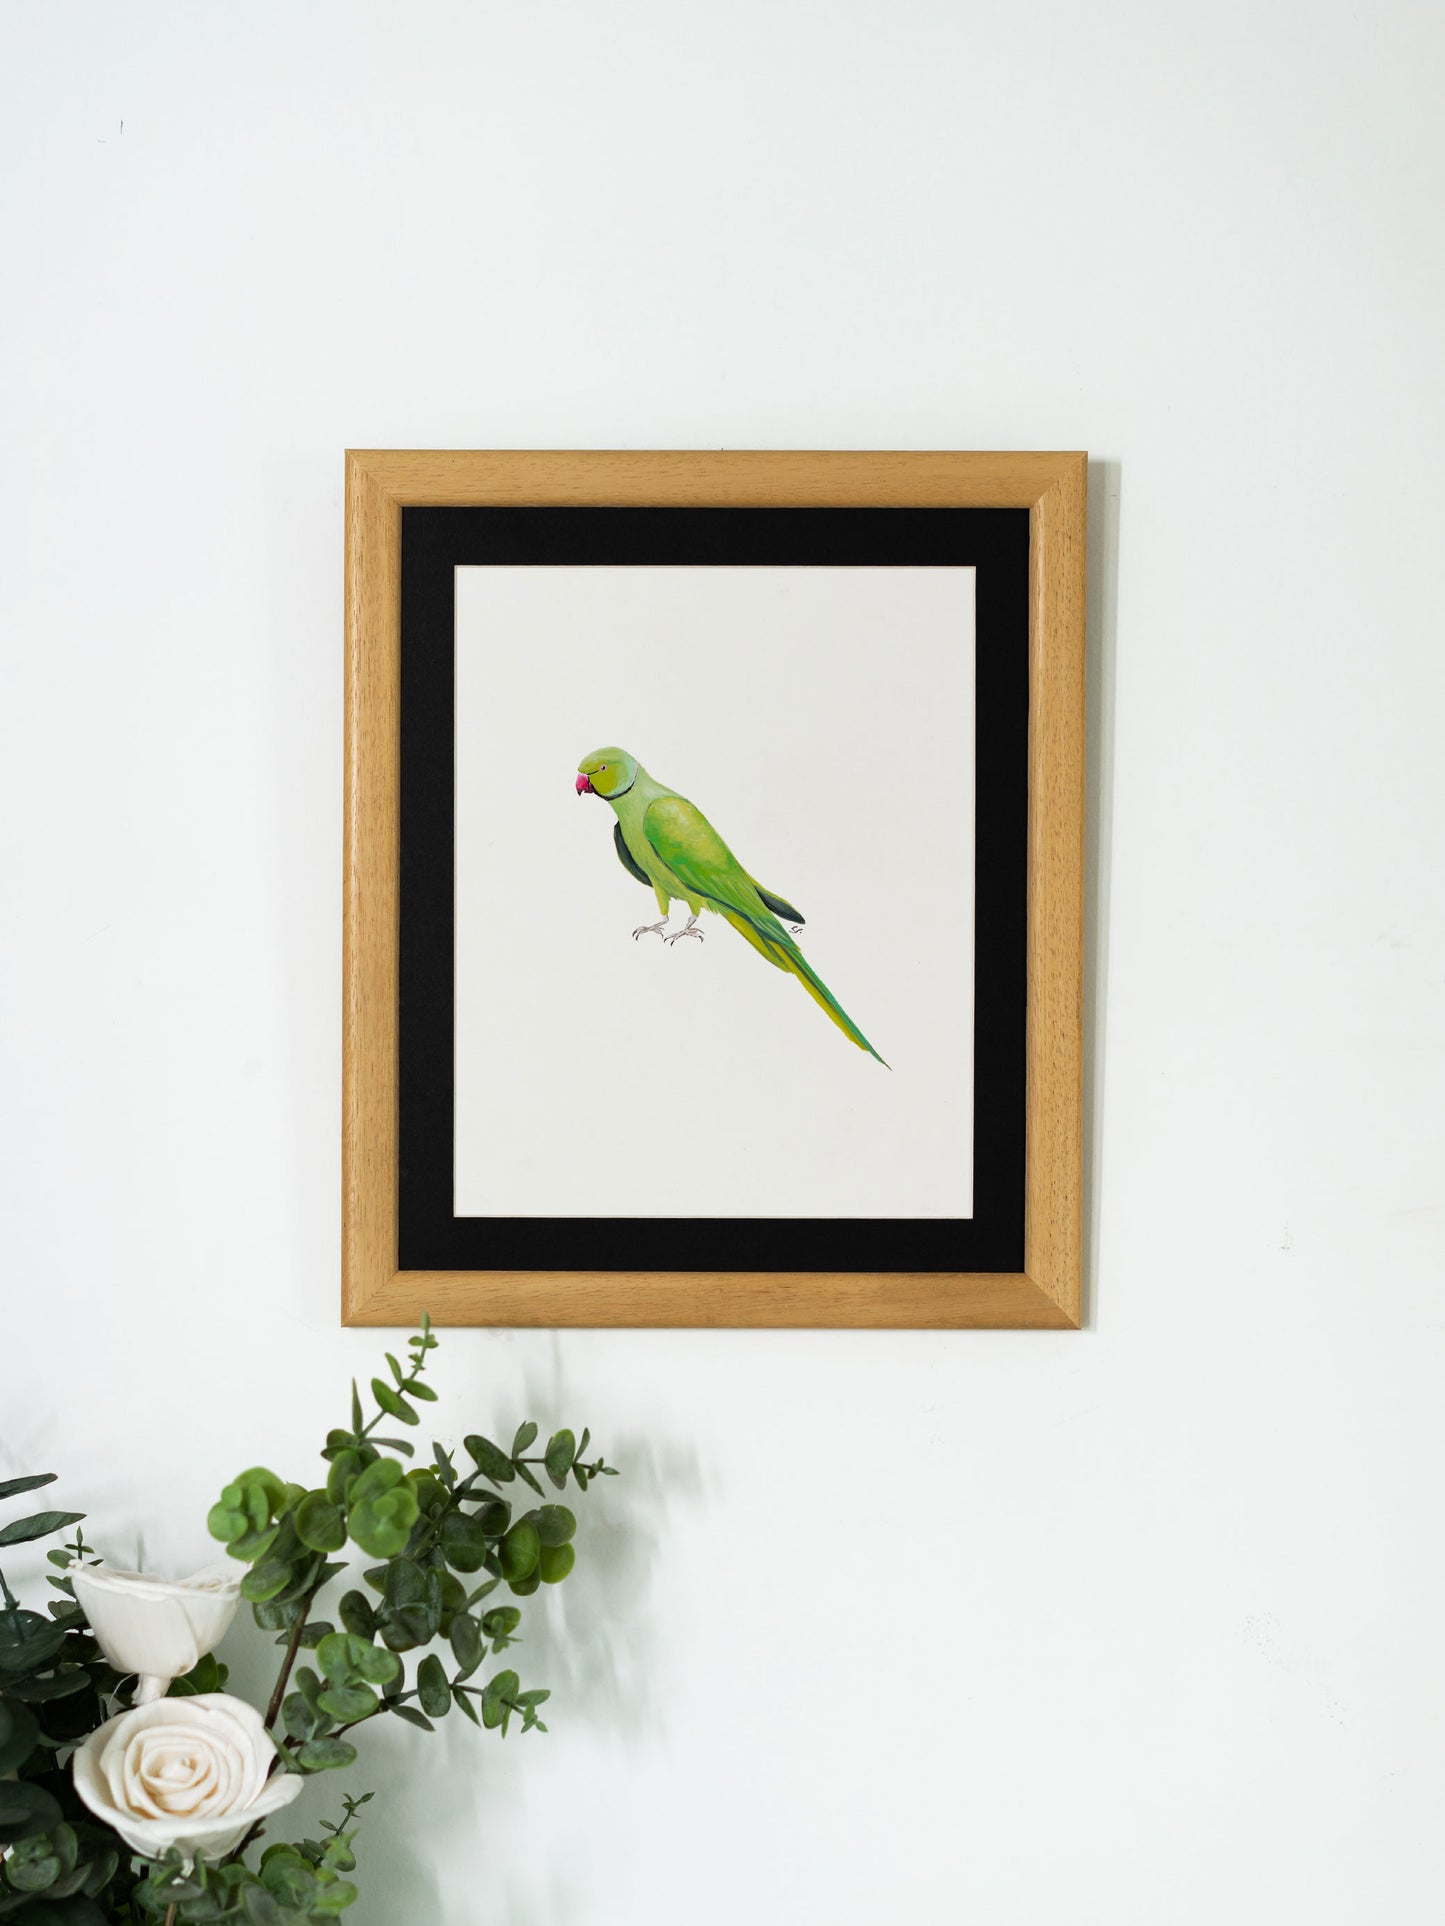 Rose Ringed Parakeet : Original Gouache Painting